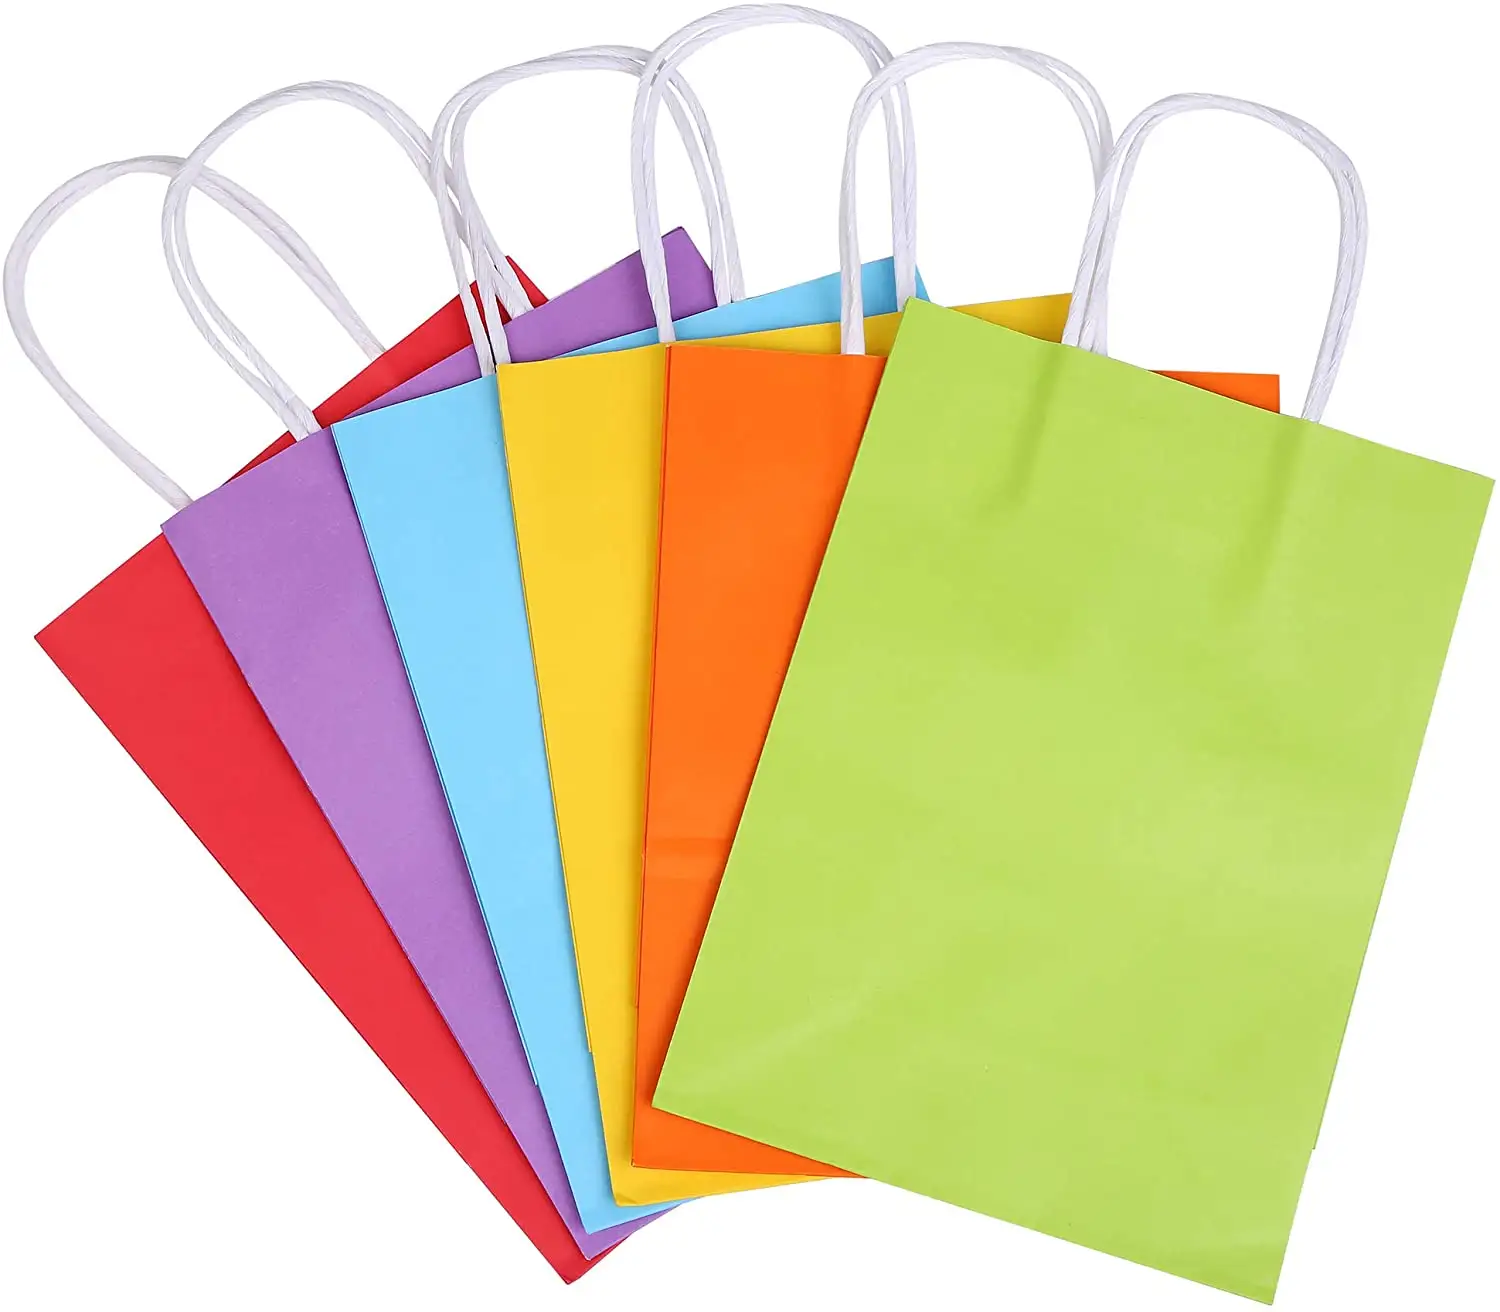 الجملة شعار مخصوص مطبوع ورقة ملونة حقيبة عالية الجودة أرخص التسوق كرافت أكياس الورق